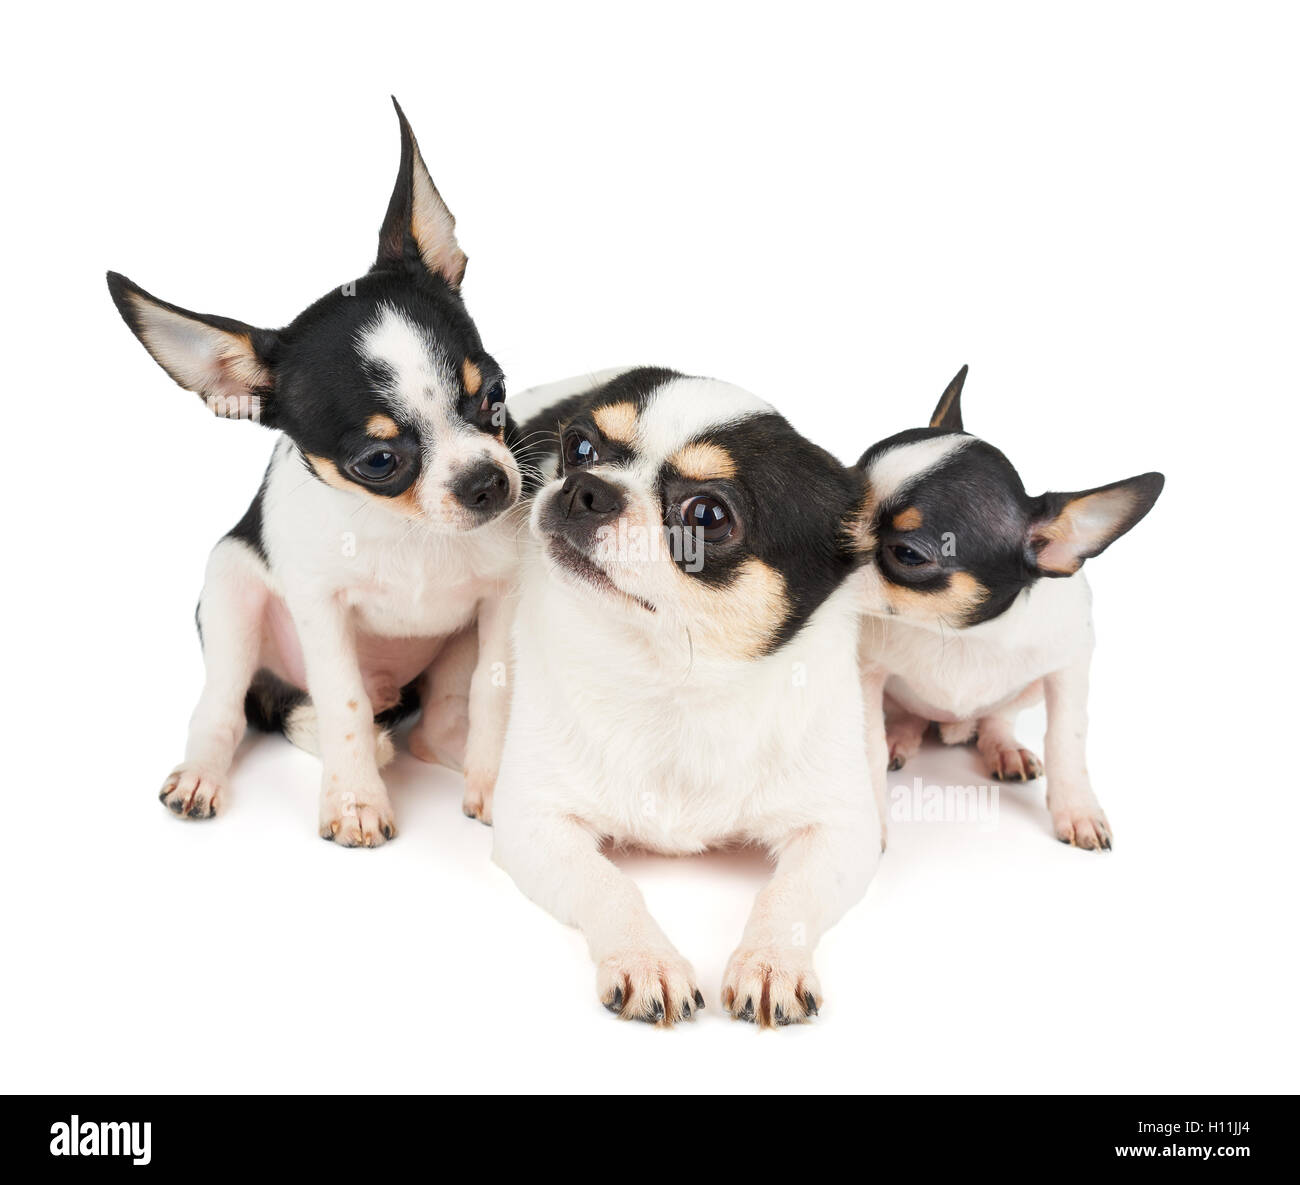 Deux chiots de Chihuahua et leur mère sur fond blanc isolé. Tous sont en noir et blanc. Banque D'Images